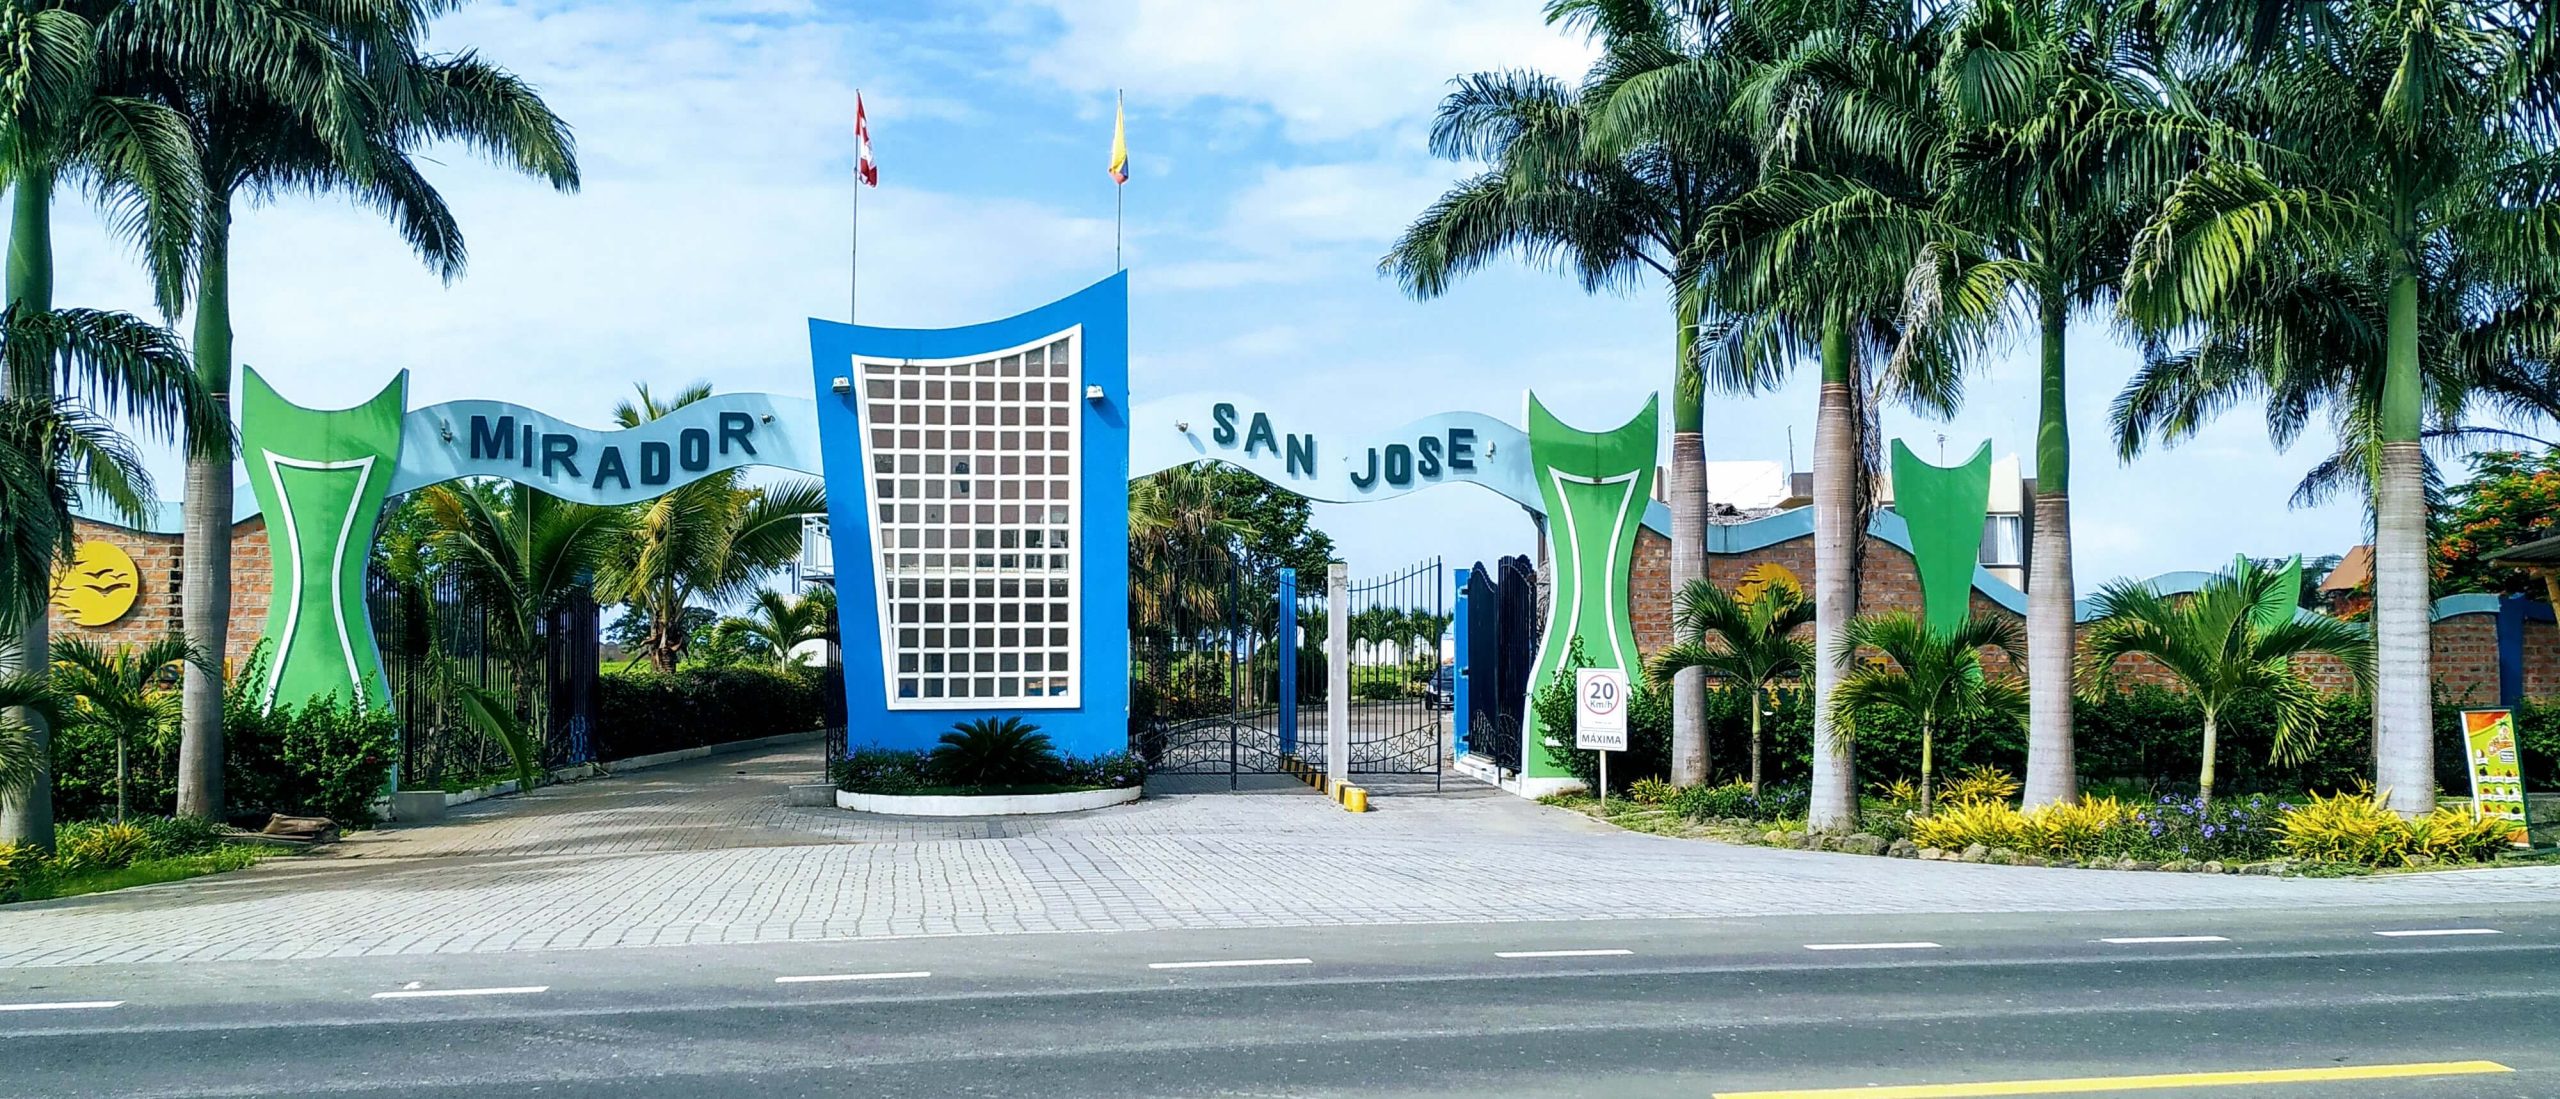 Mirador San Jose Entrance